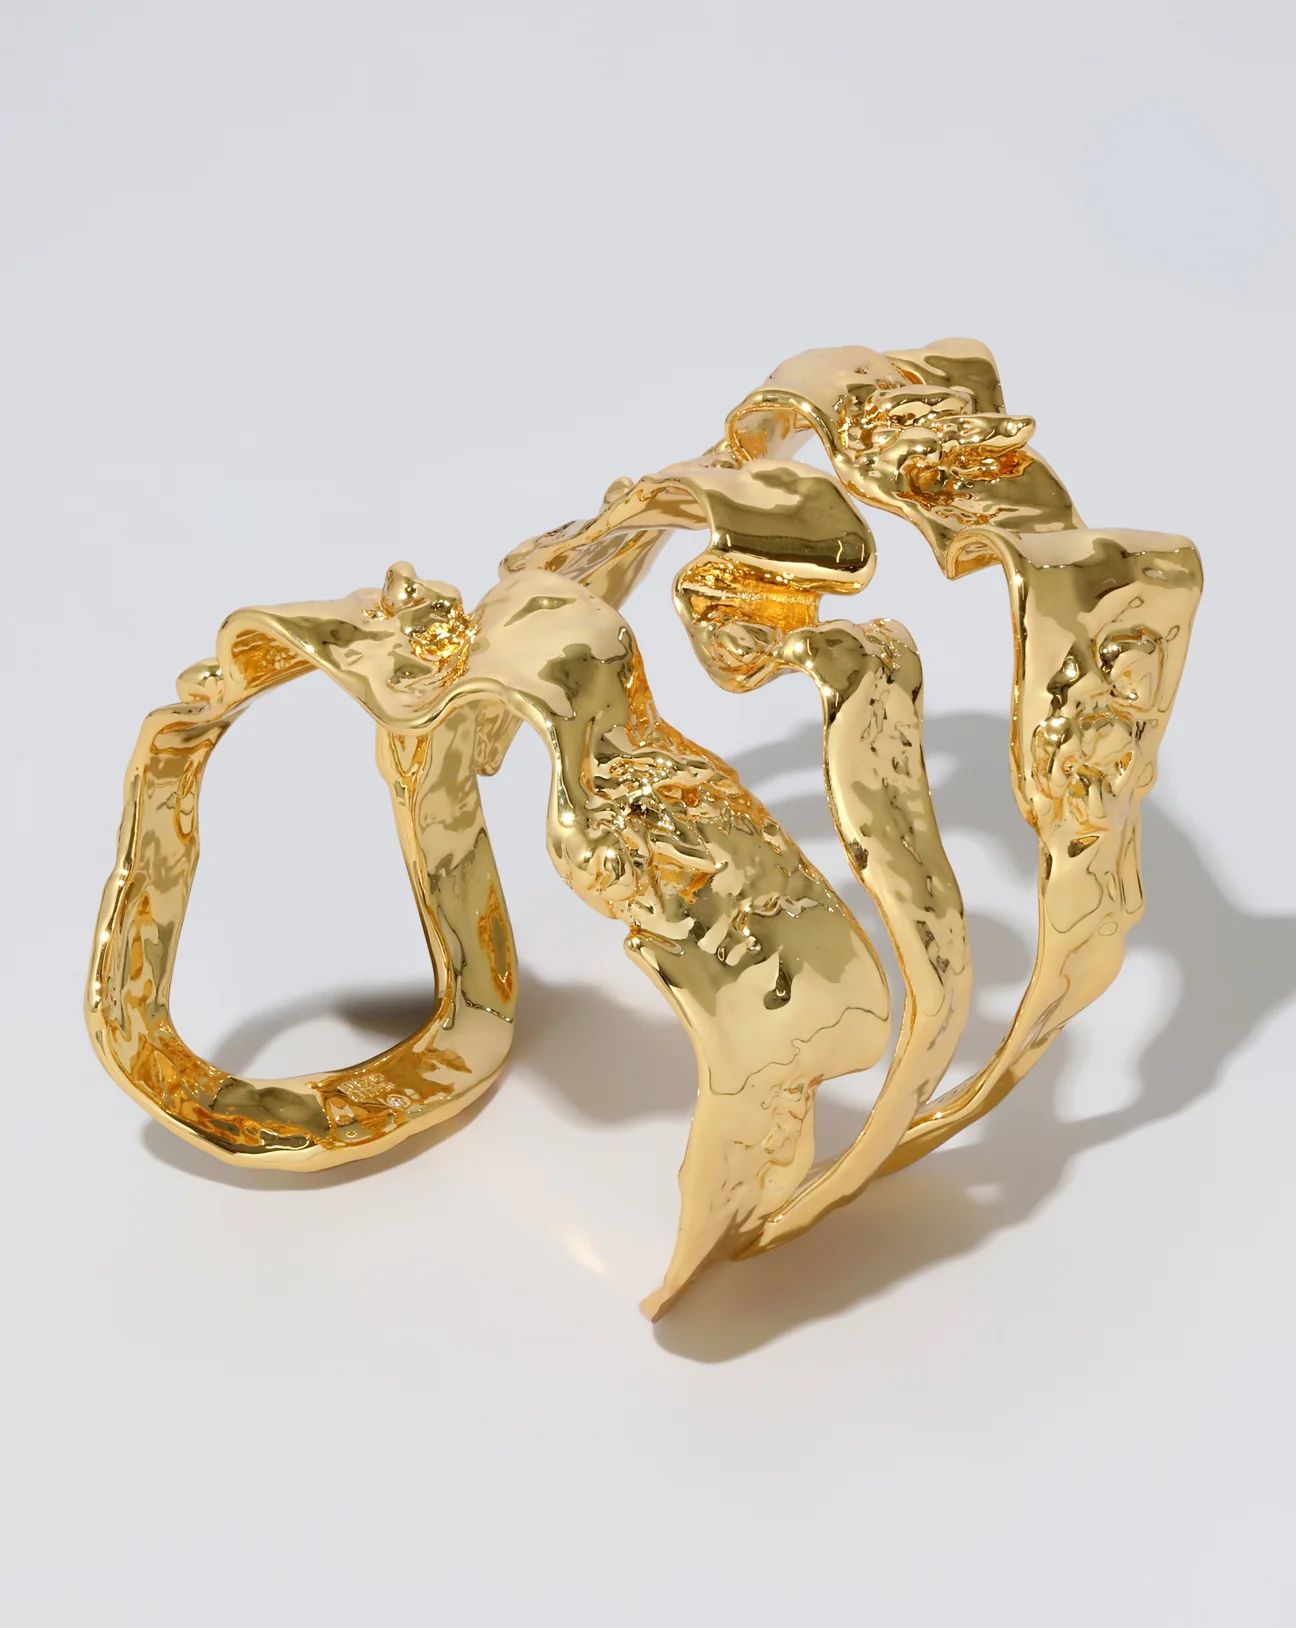 Brut Gold Sculptural Ribbon Wide Cuff Bracelet | Alexis Bittar | Alexis Bittar